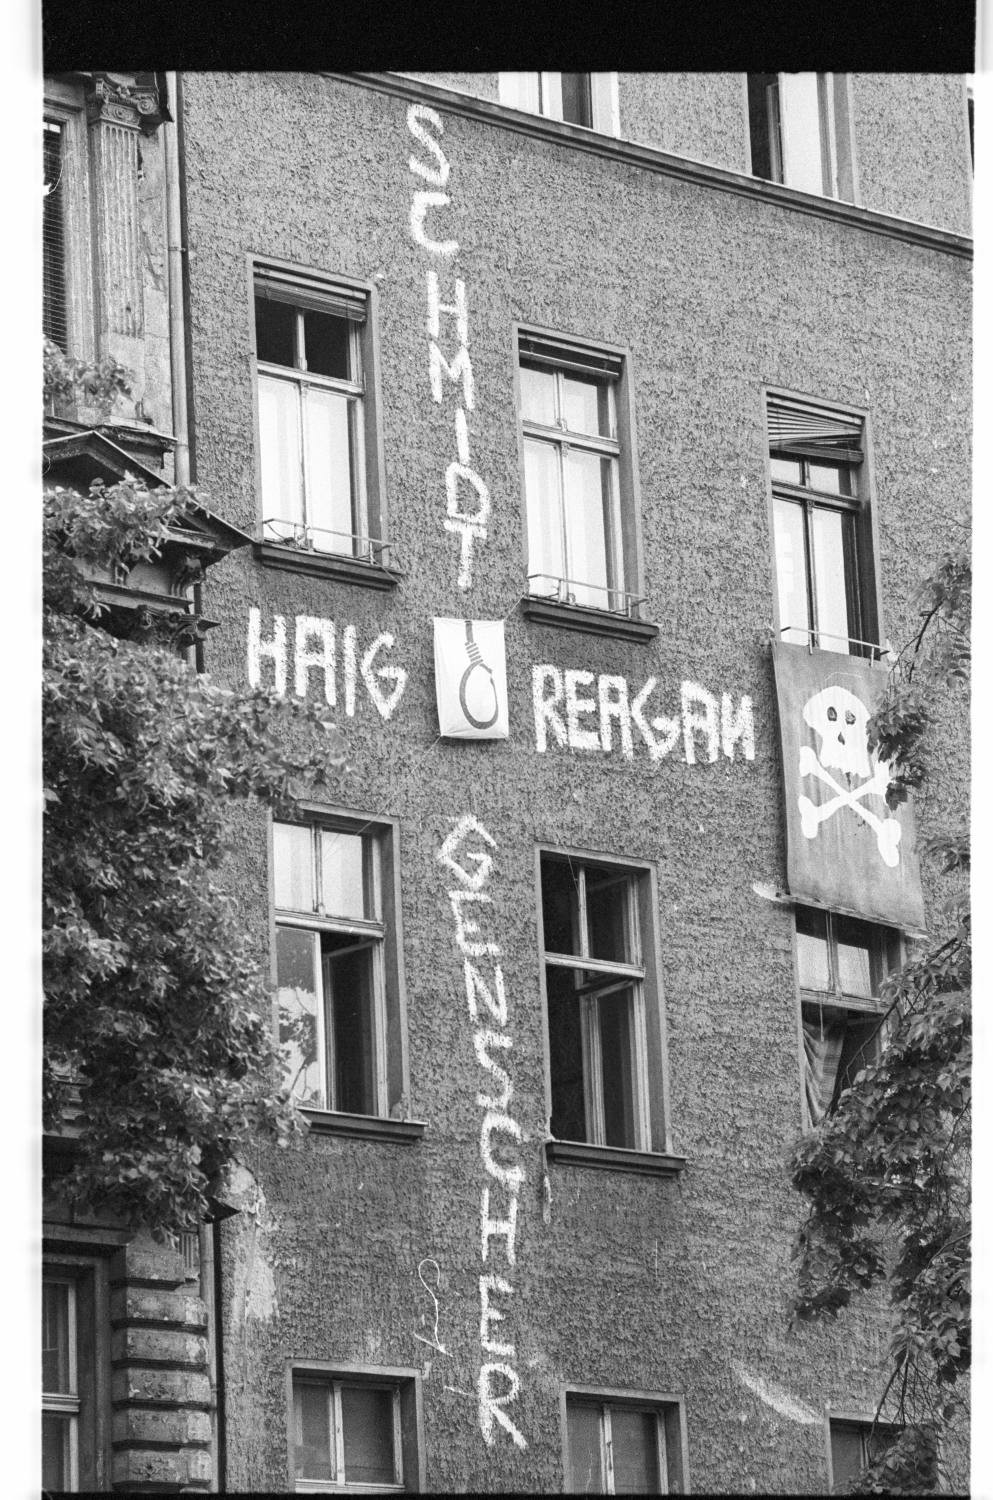 Kleinbildnegative: Anti-Reagan-Transparente, 1982 (Museen Tempelhof-Schöneberg/Jürgen Henschel RR-F)